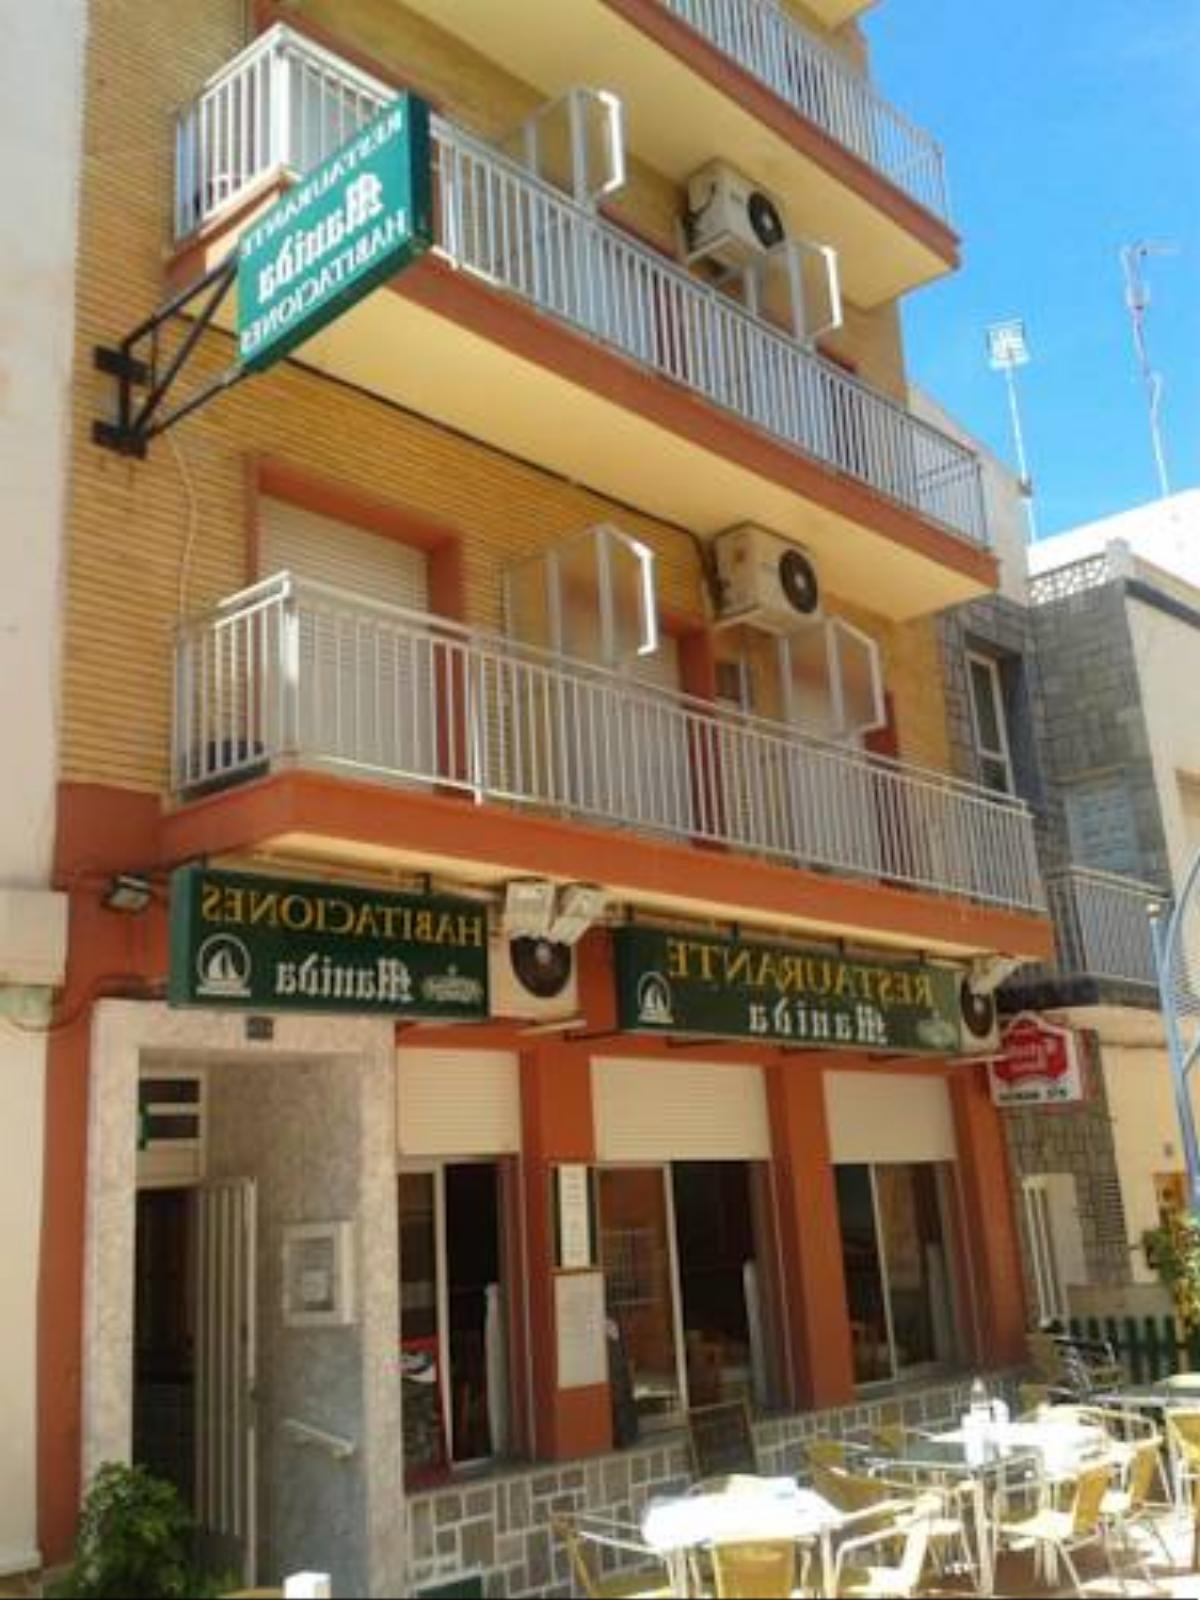 Pension Manida Hotel Santiago de la Ribera Spain